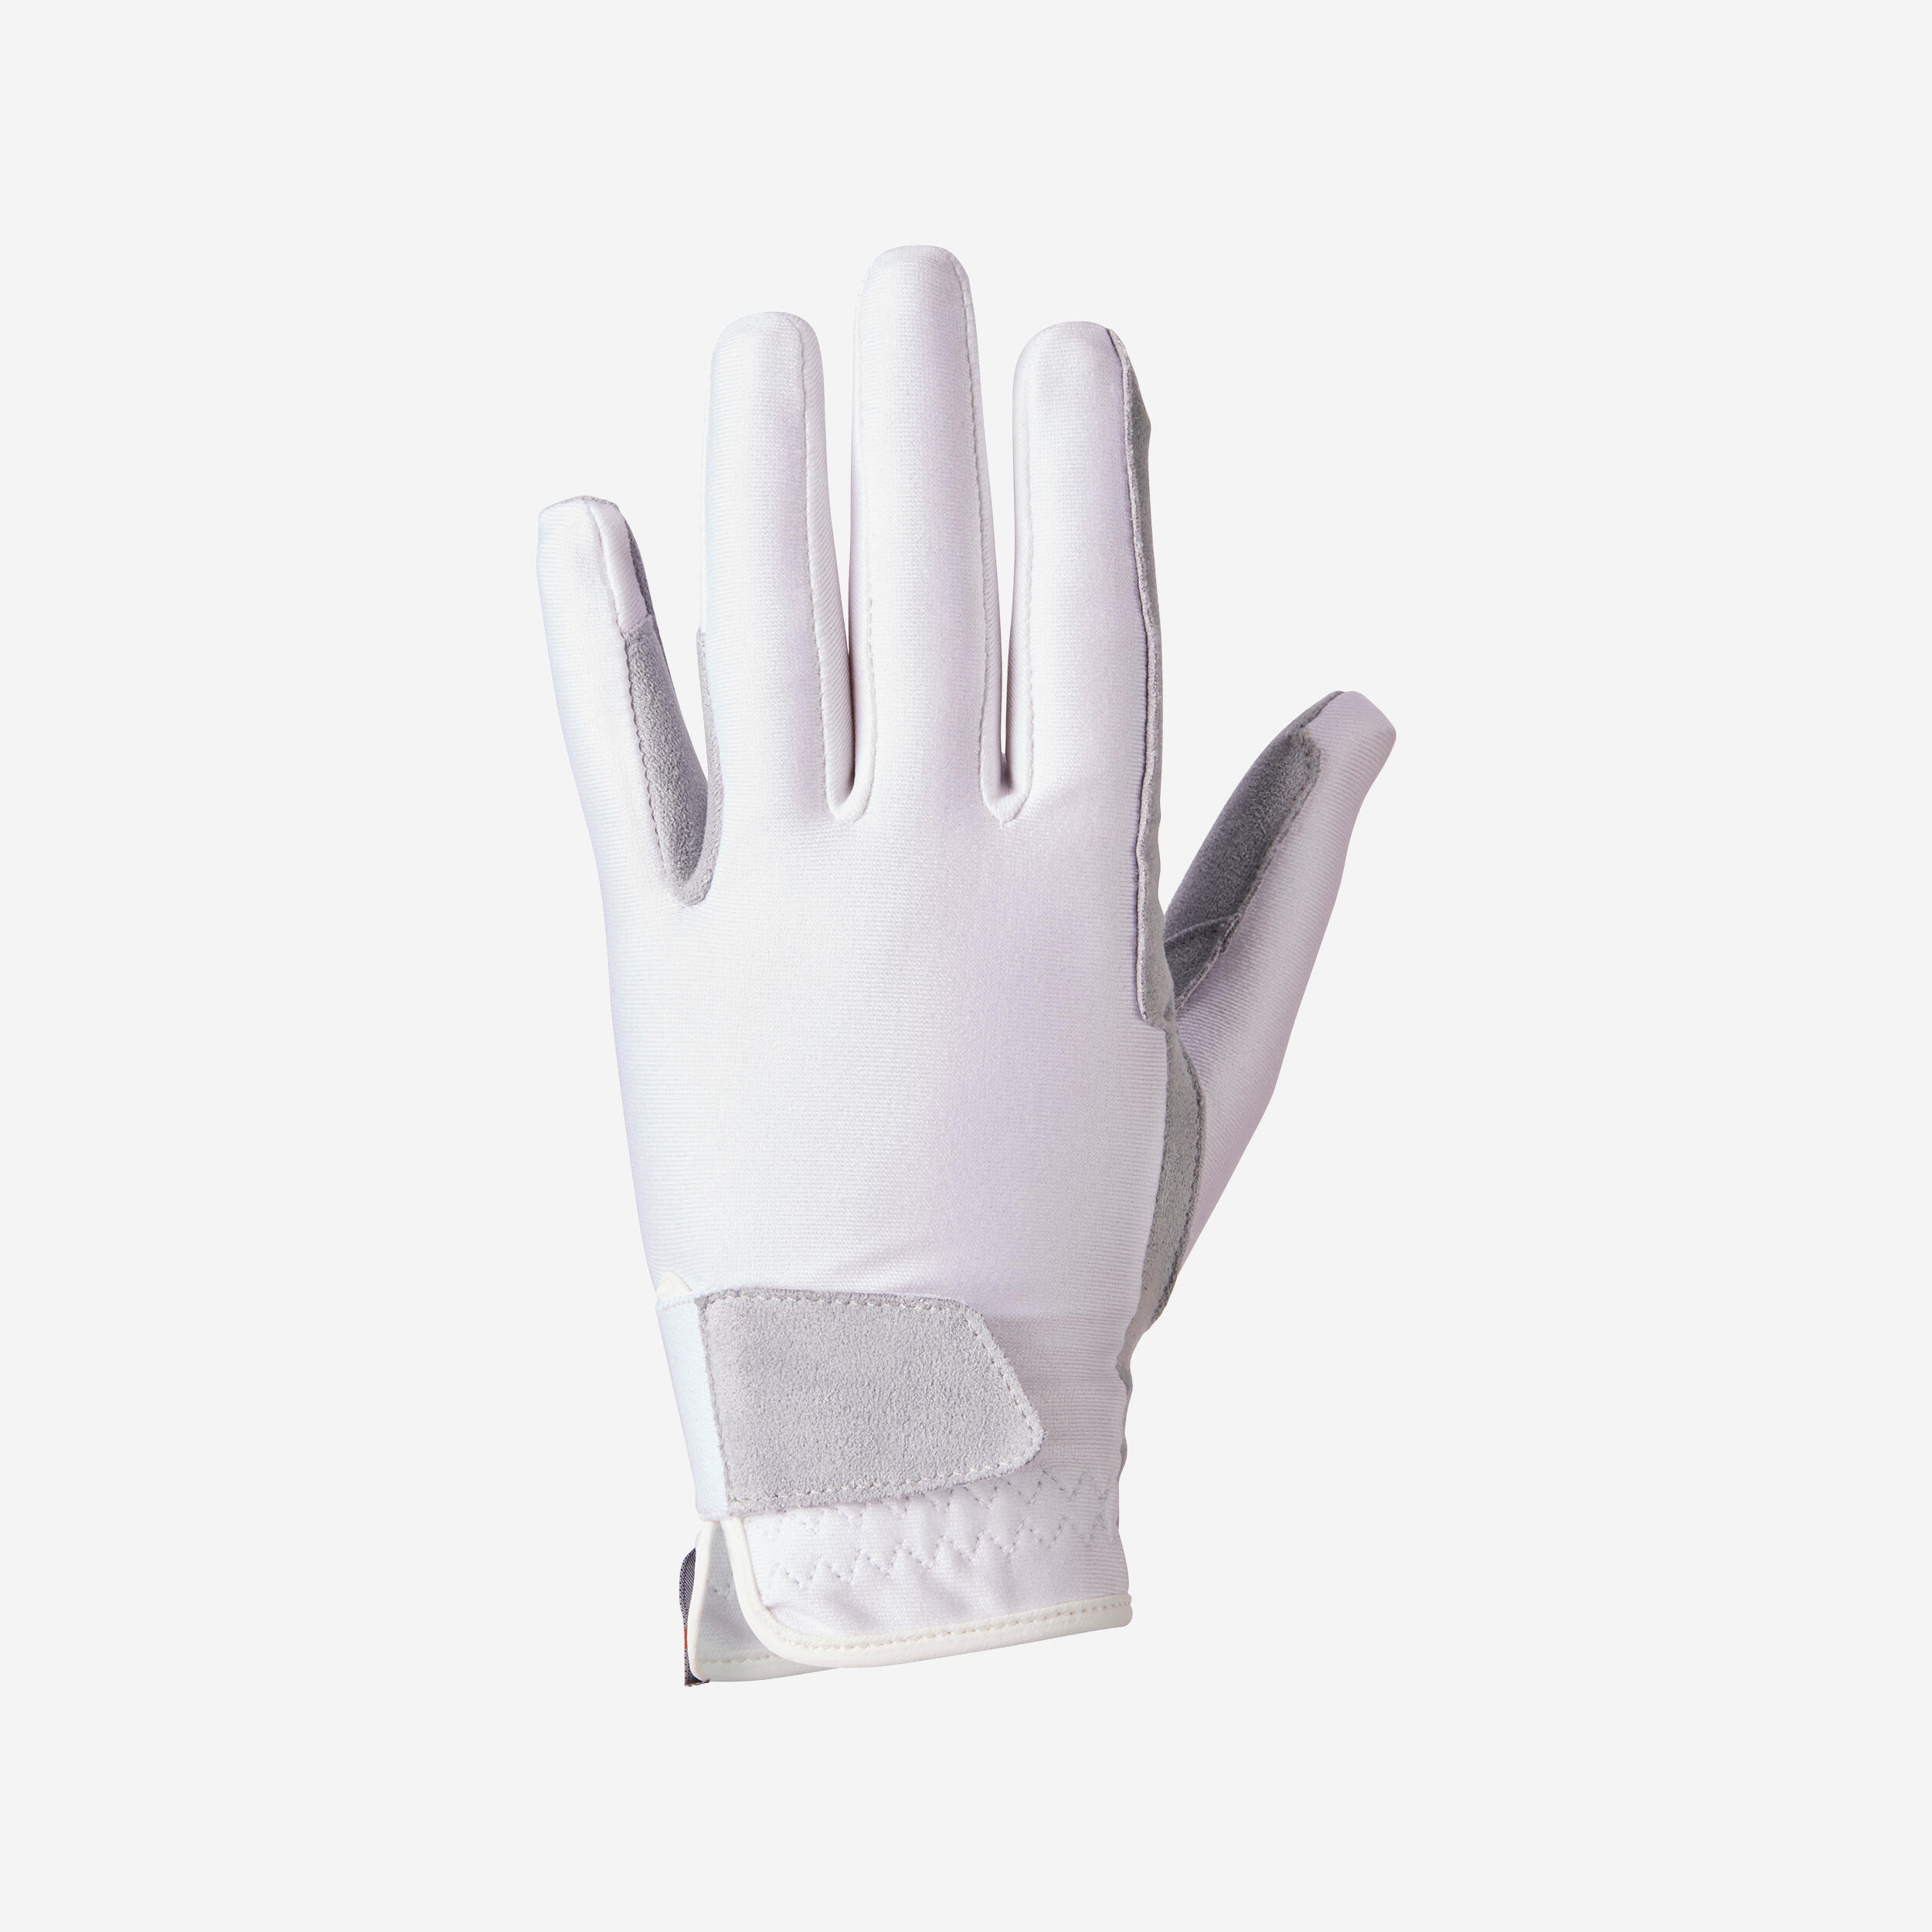 Basic Children's Horse Riding Gloves - White 1/11